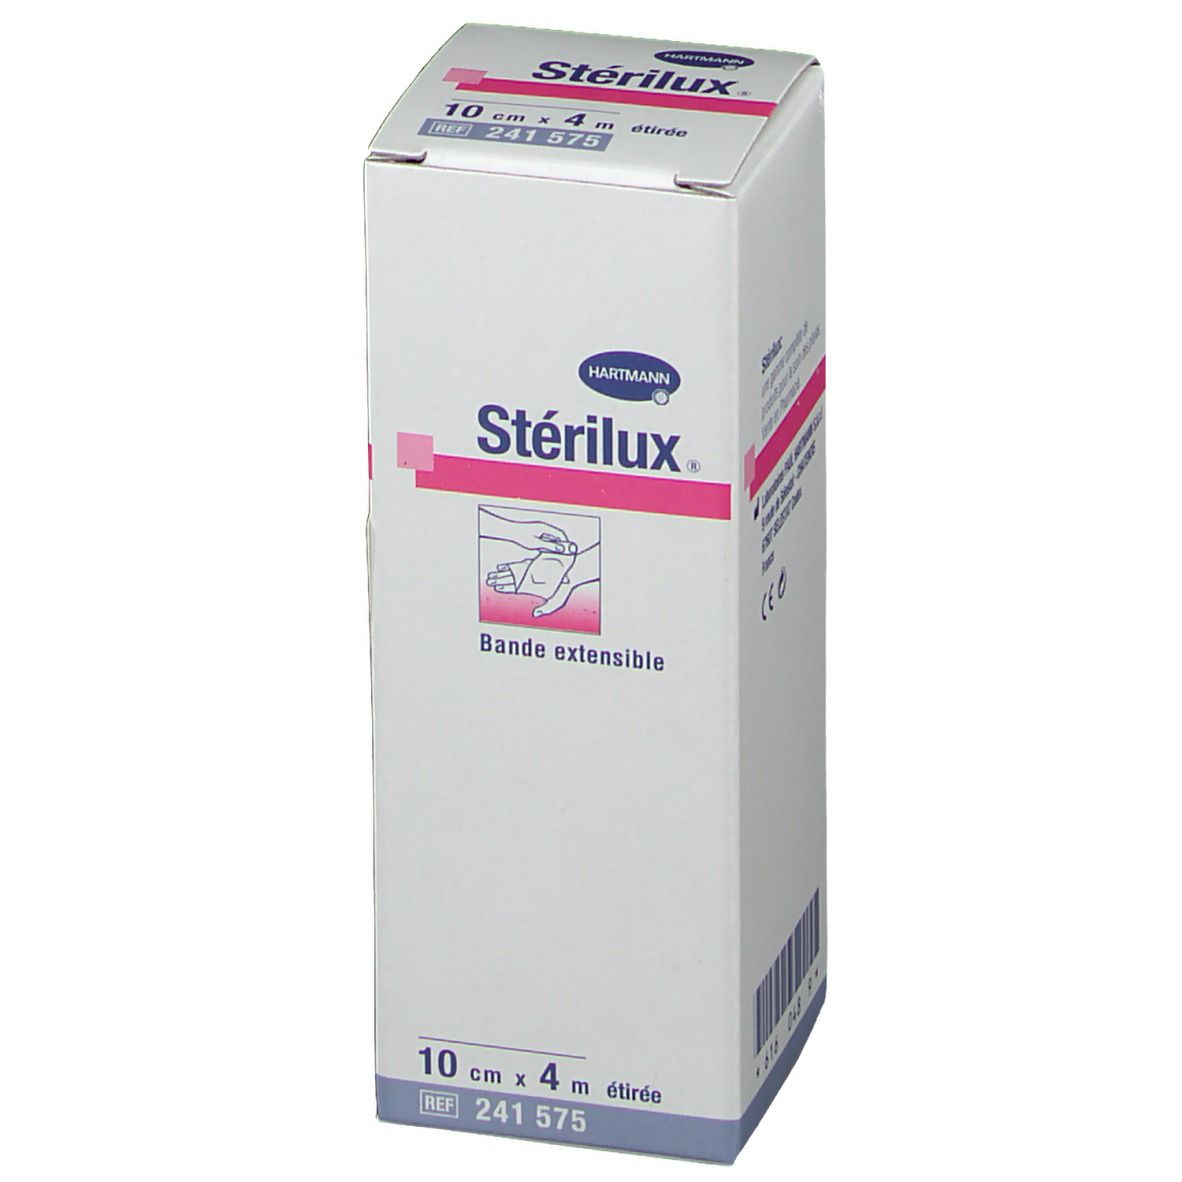 Stérilux® Bande extensible 4 m x 10 cm étirée